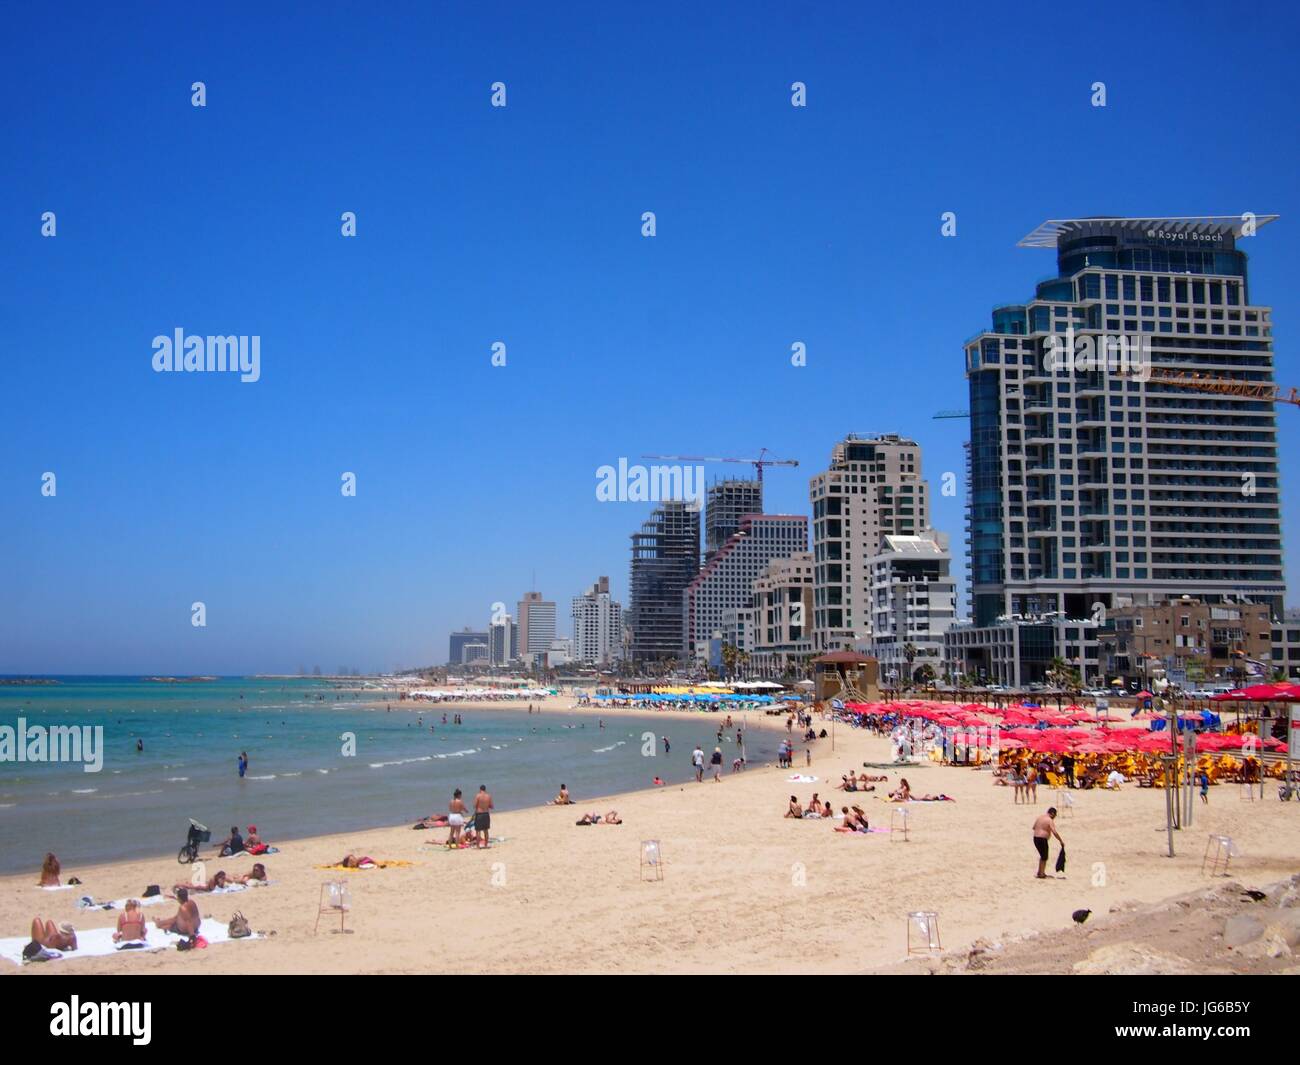 Tel Aviv, Israele - 07 Giugno, 2017: una bella chiara e giornata di sole, con la gente del luogo rilassante sulle spiagge di sabbia bianca e acque turchesi del mare Mediterranea Foto Stock